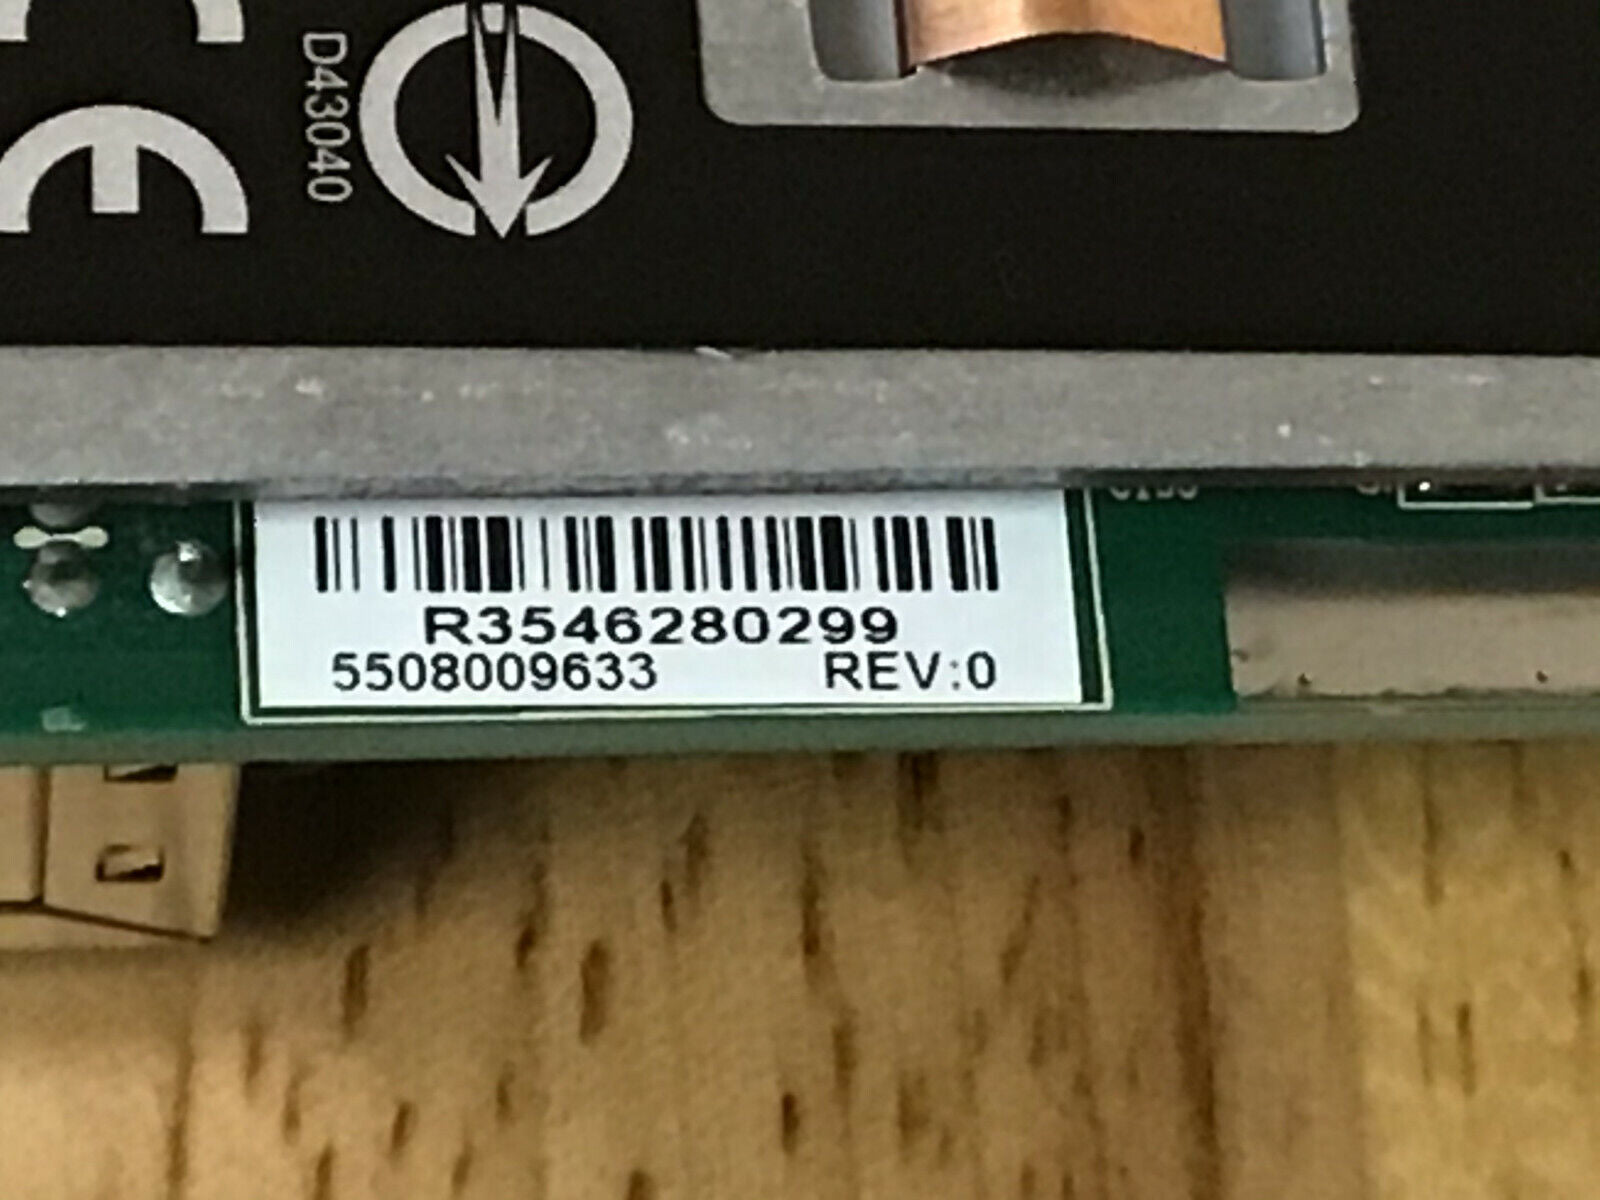 Dell PowerConnect 10GBASE-T Module HPP69 4-Port RJ45 Quad 10Gigabit Copper.